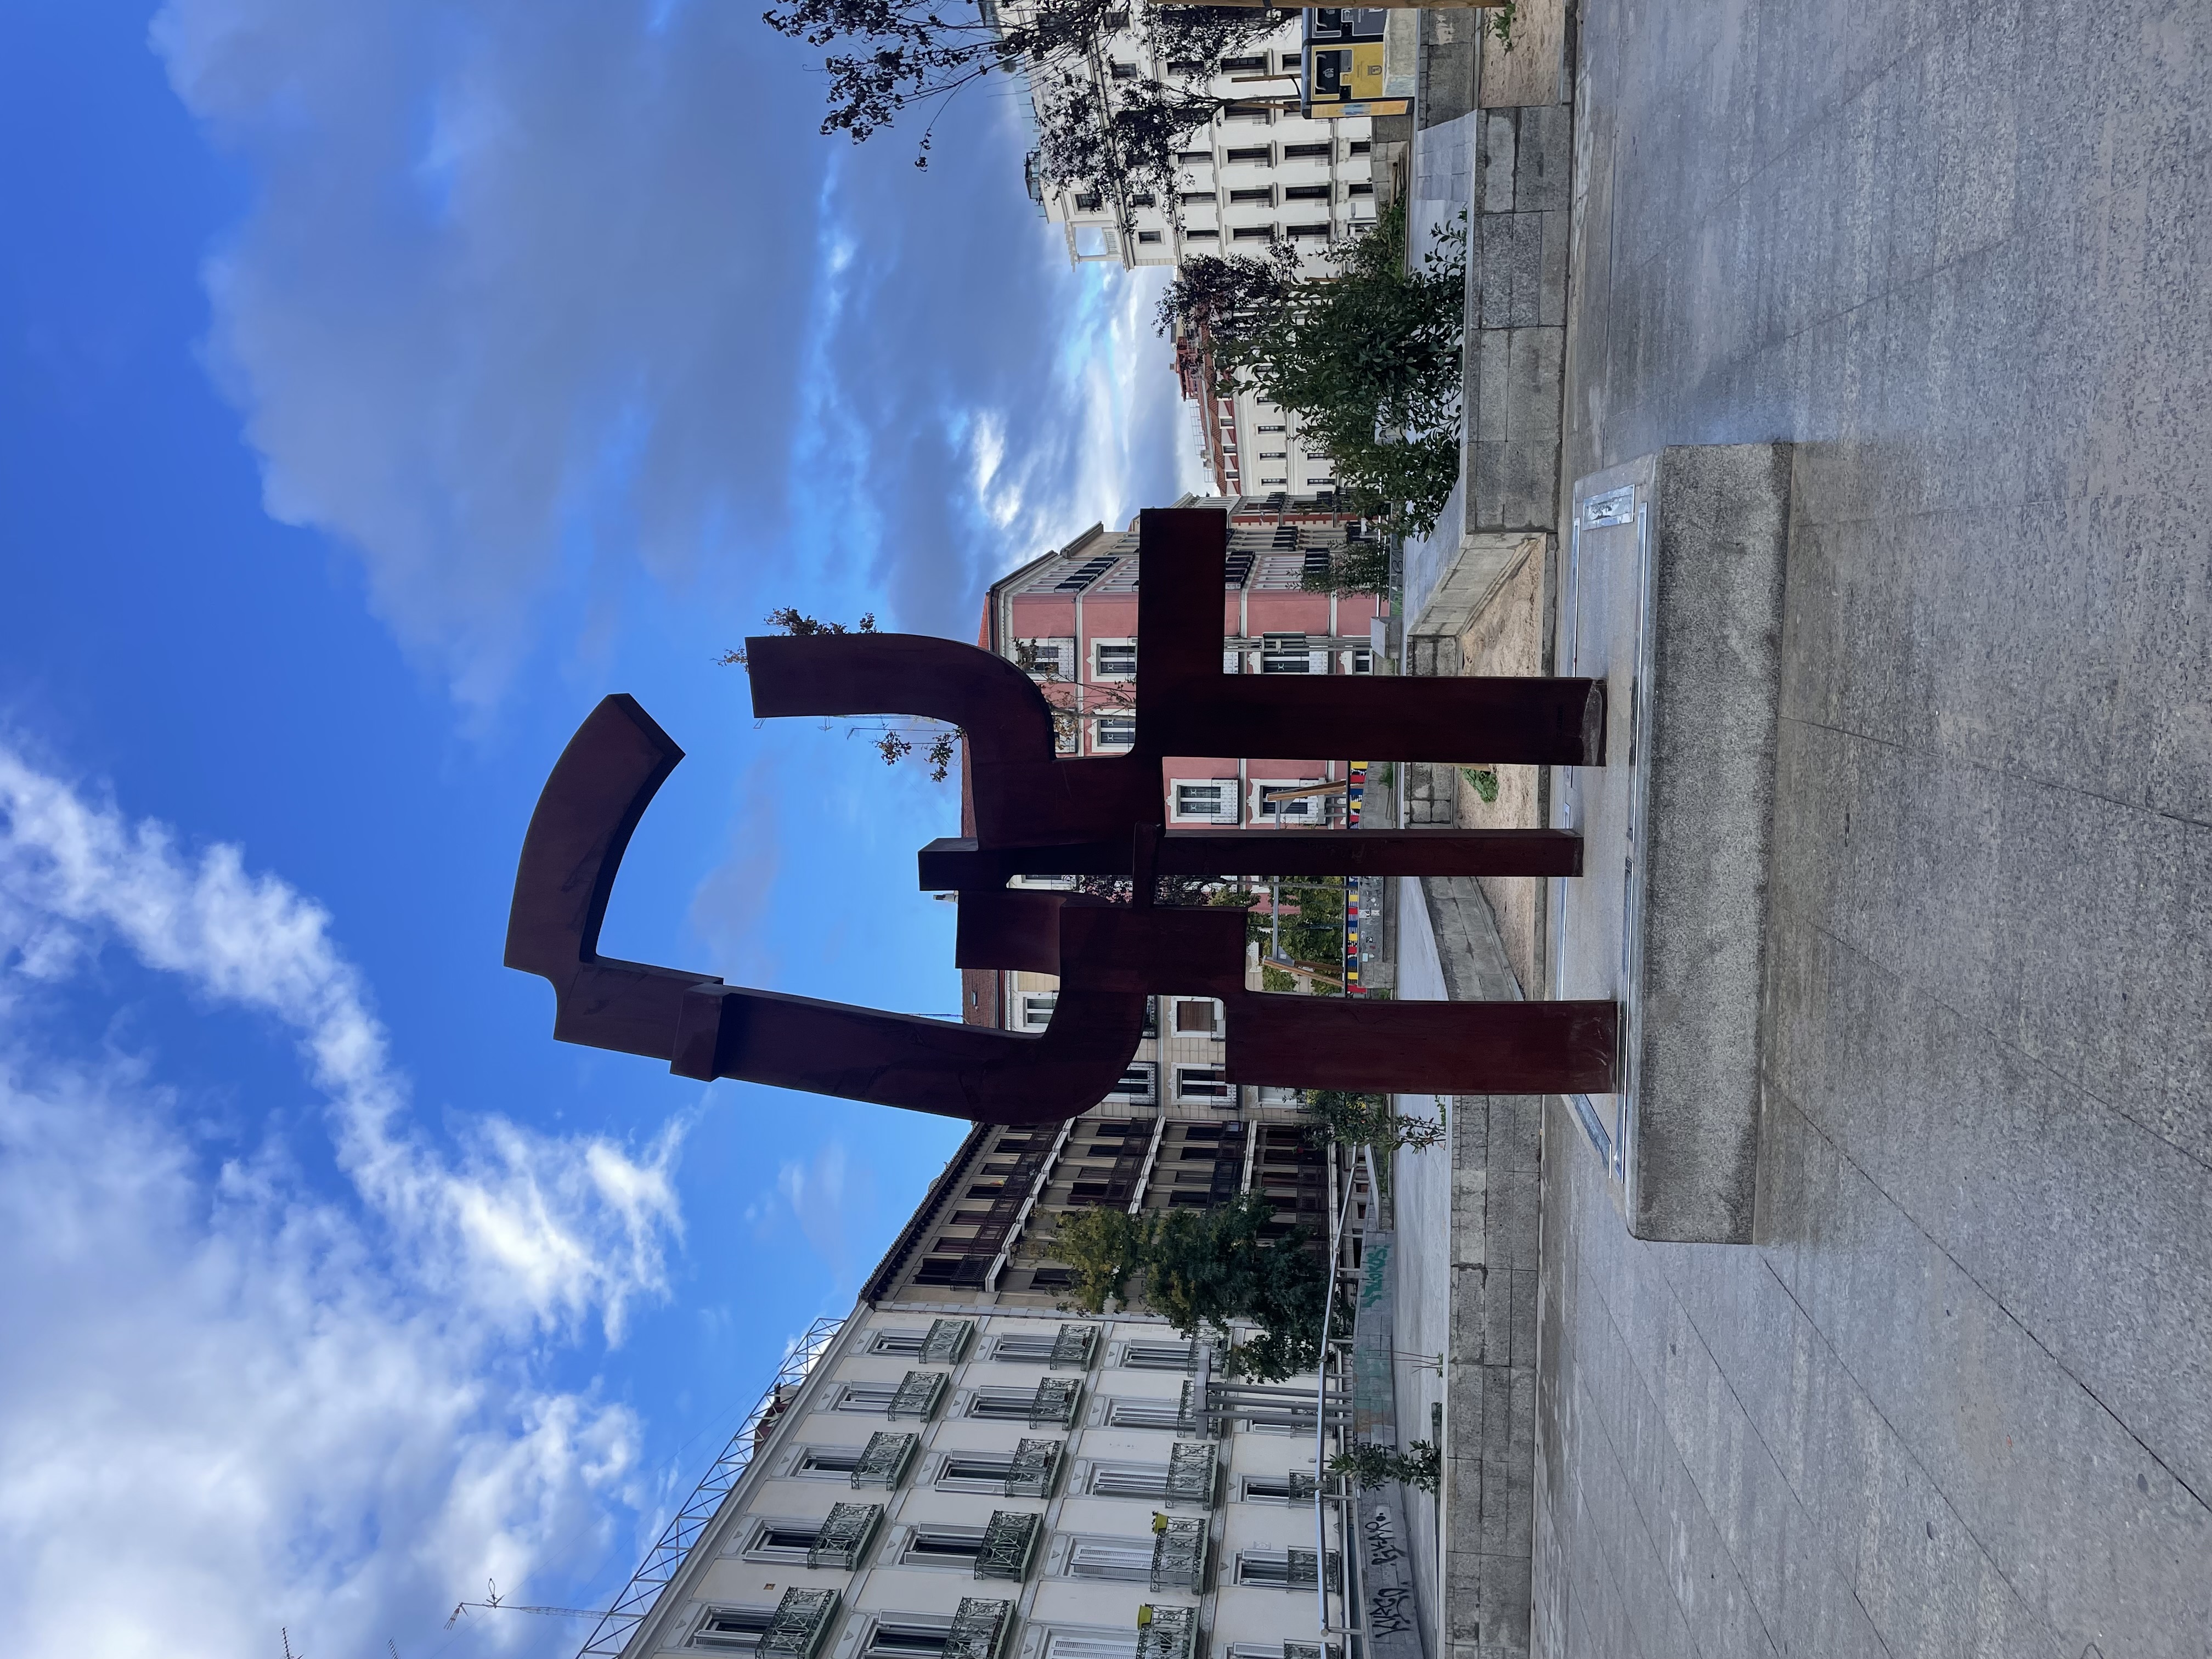 New sculpture in Madrid by Carlos Albert